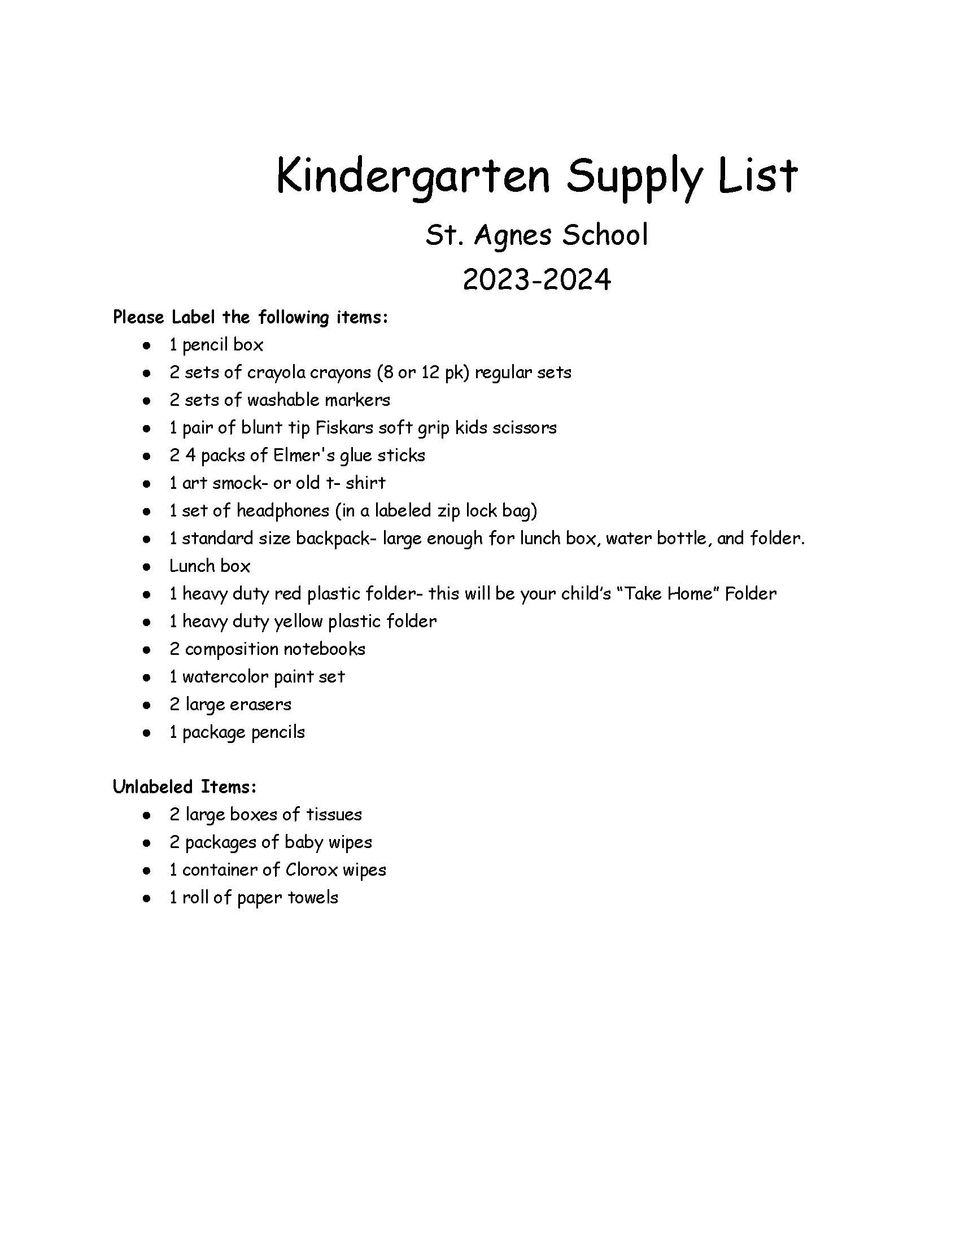 Kindergarten supply list 2023 2024